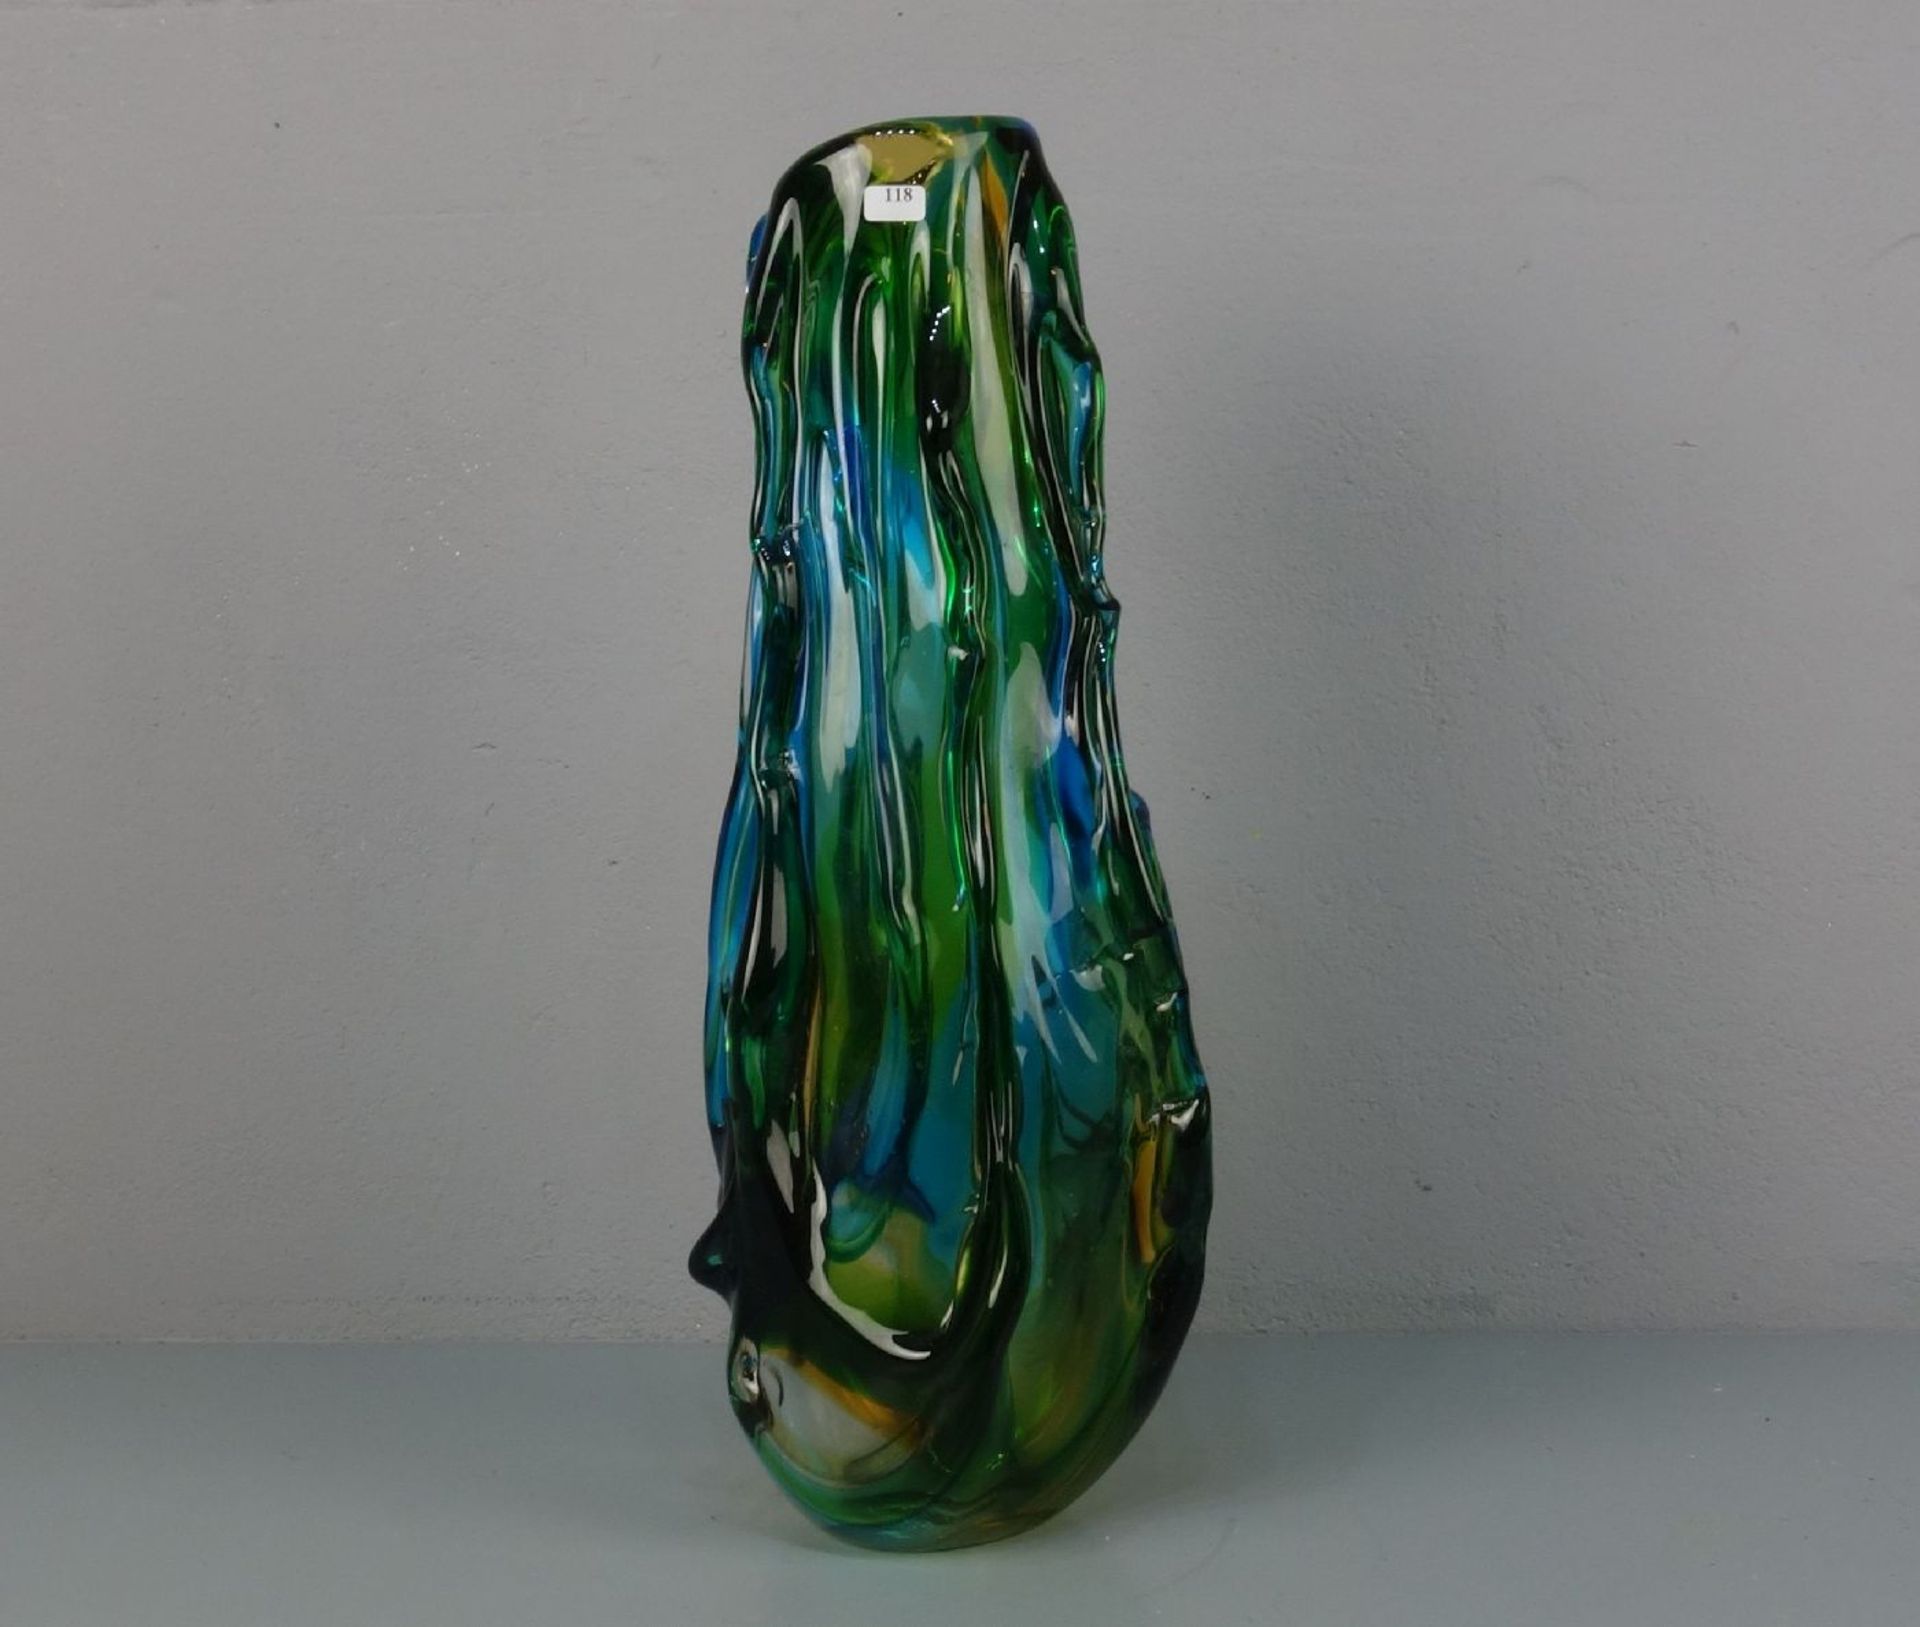 MURANO - GLASVASE, gerippte Keulenform. Dickwandiges farbloses Glas, grün, gelb und blau